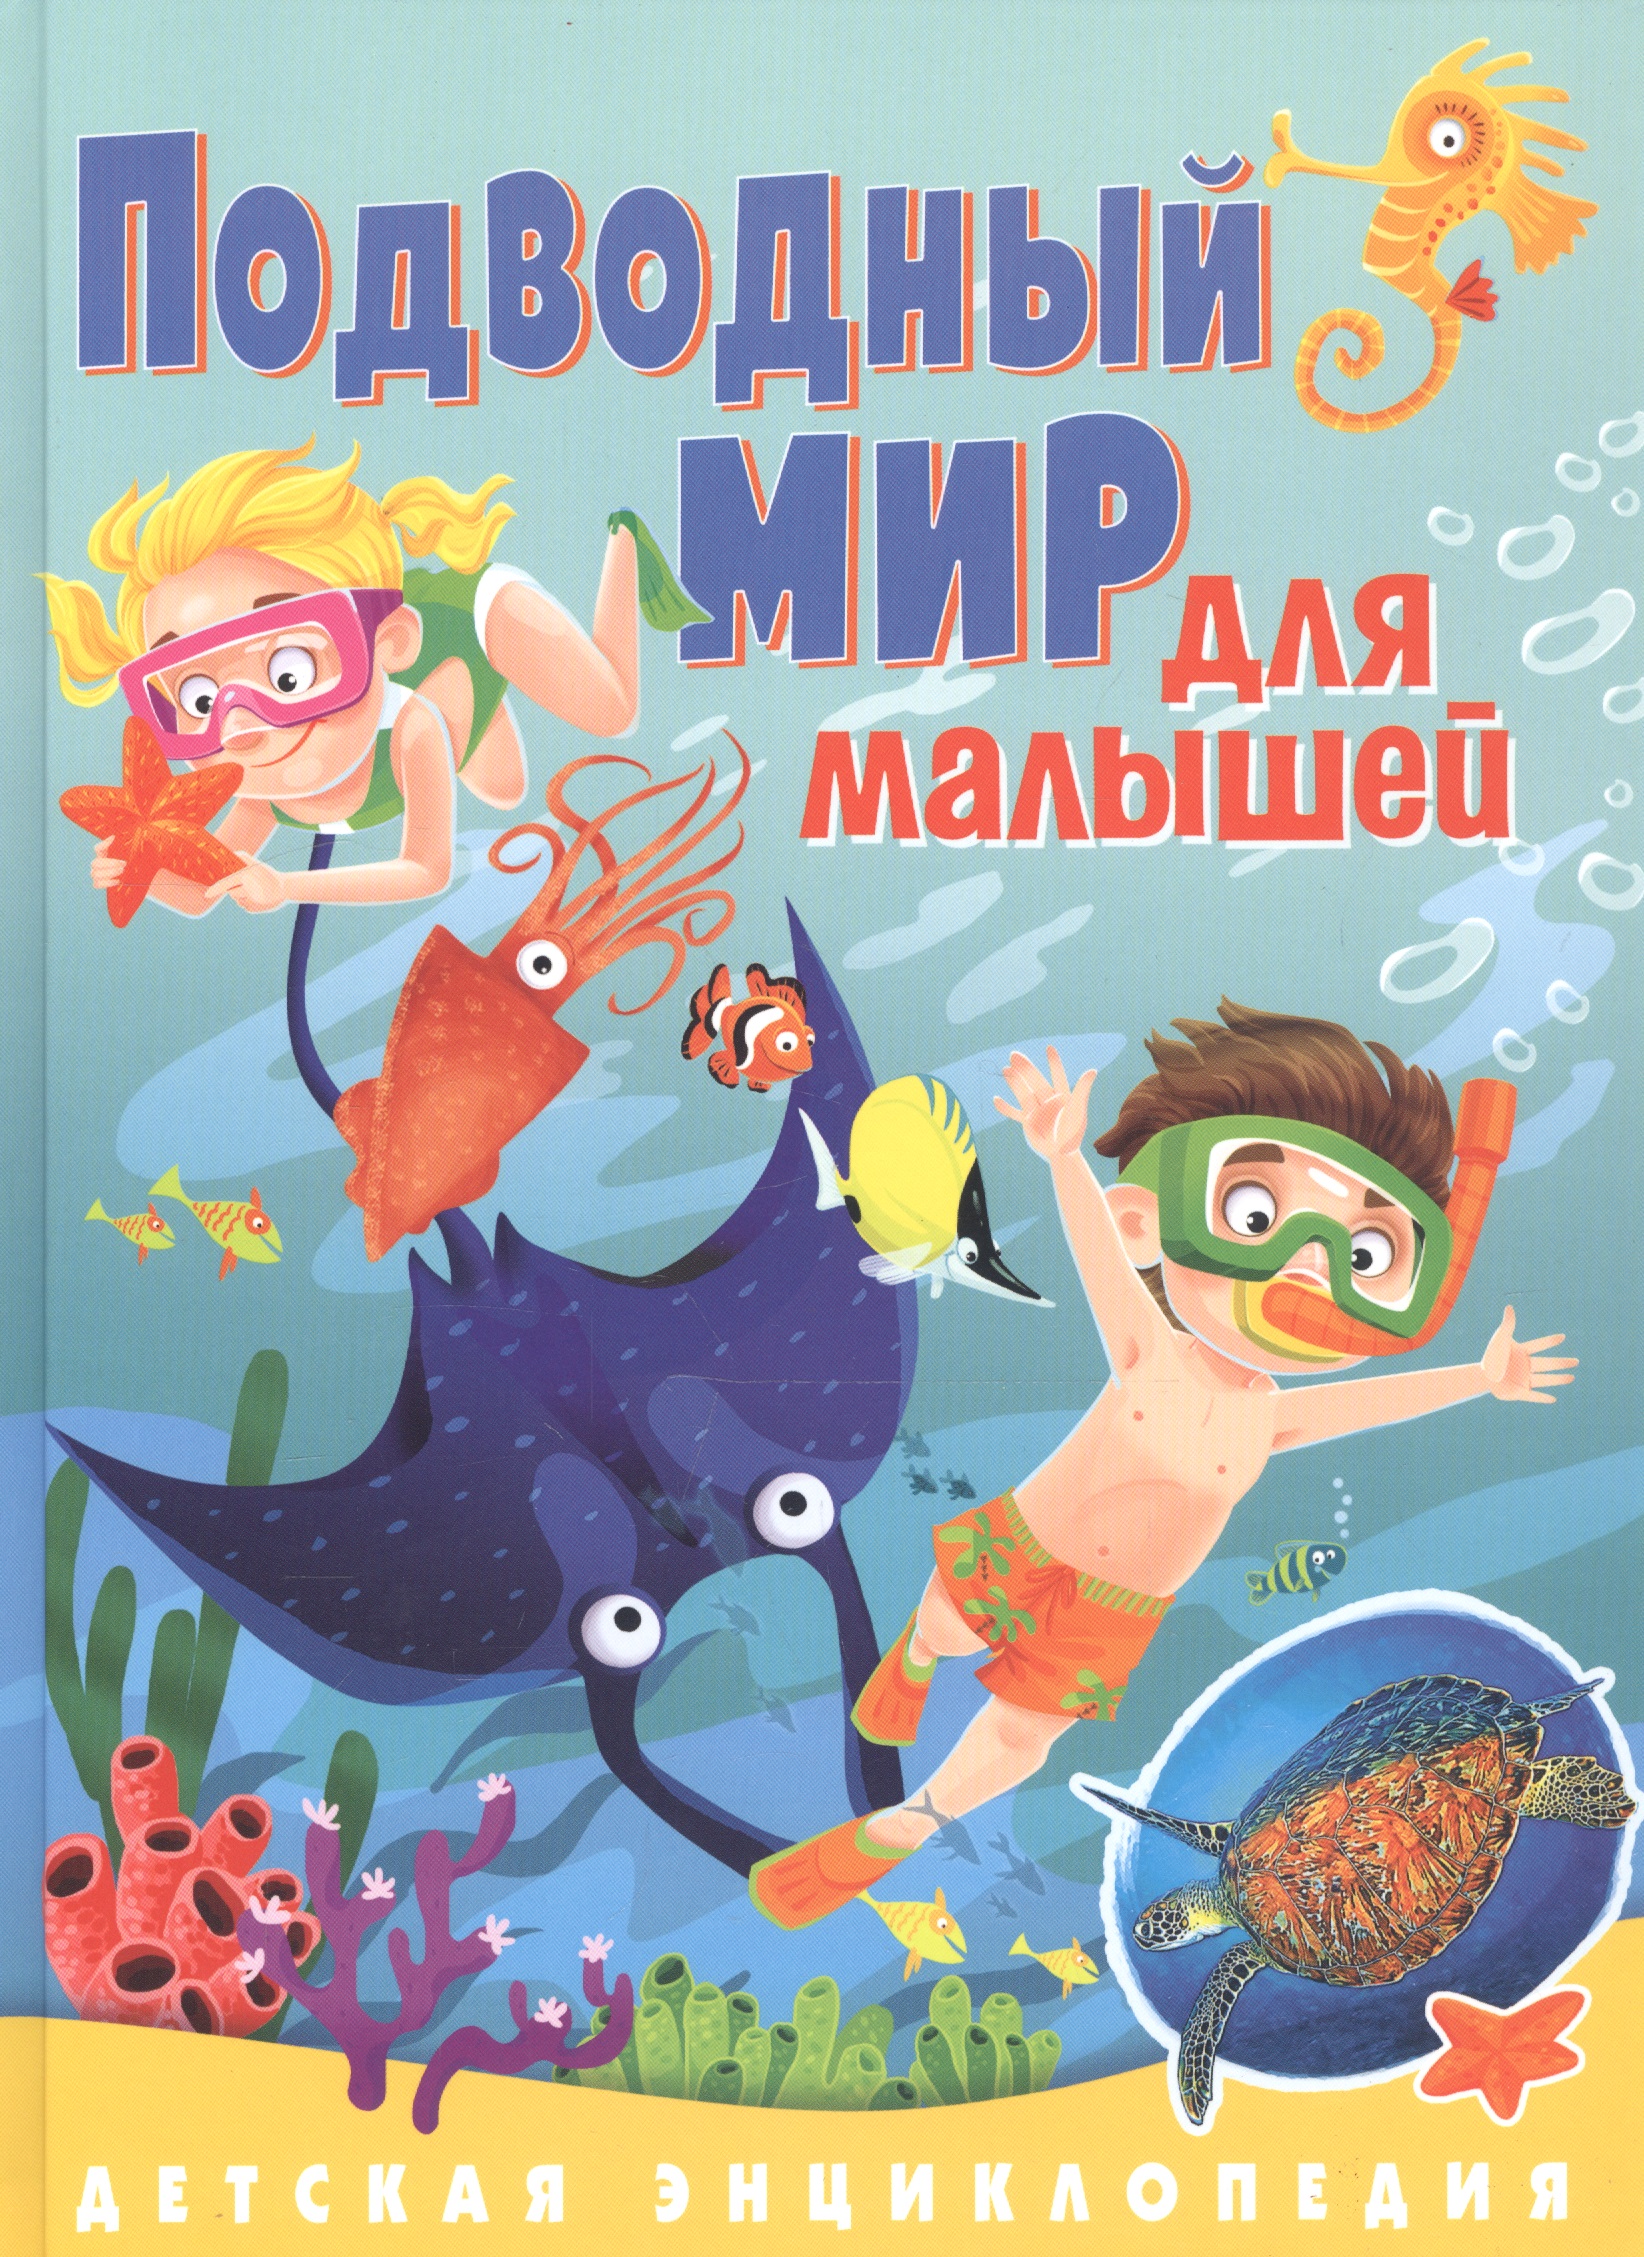 Забирова Анна Викторовна - Подводный мир для малышей. Детская энциклопедия